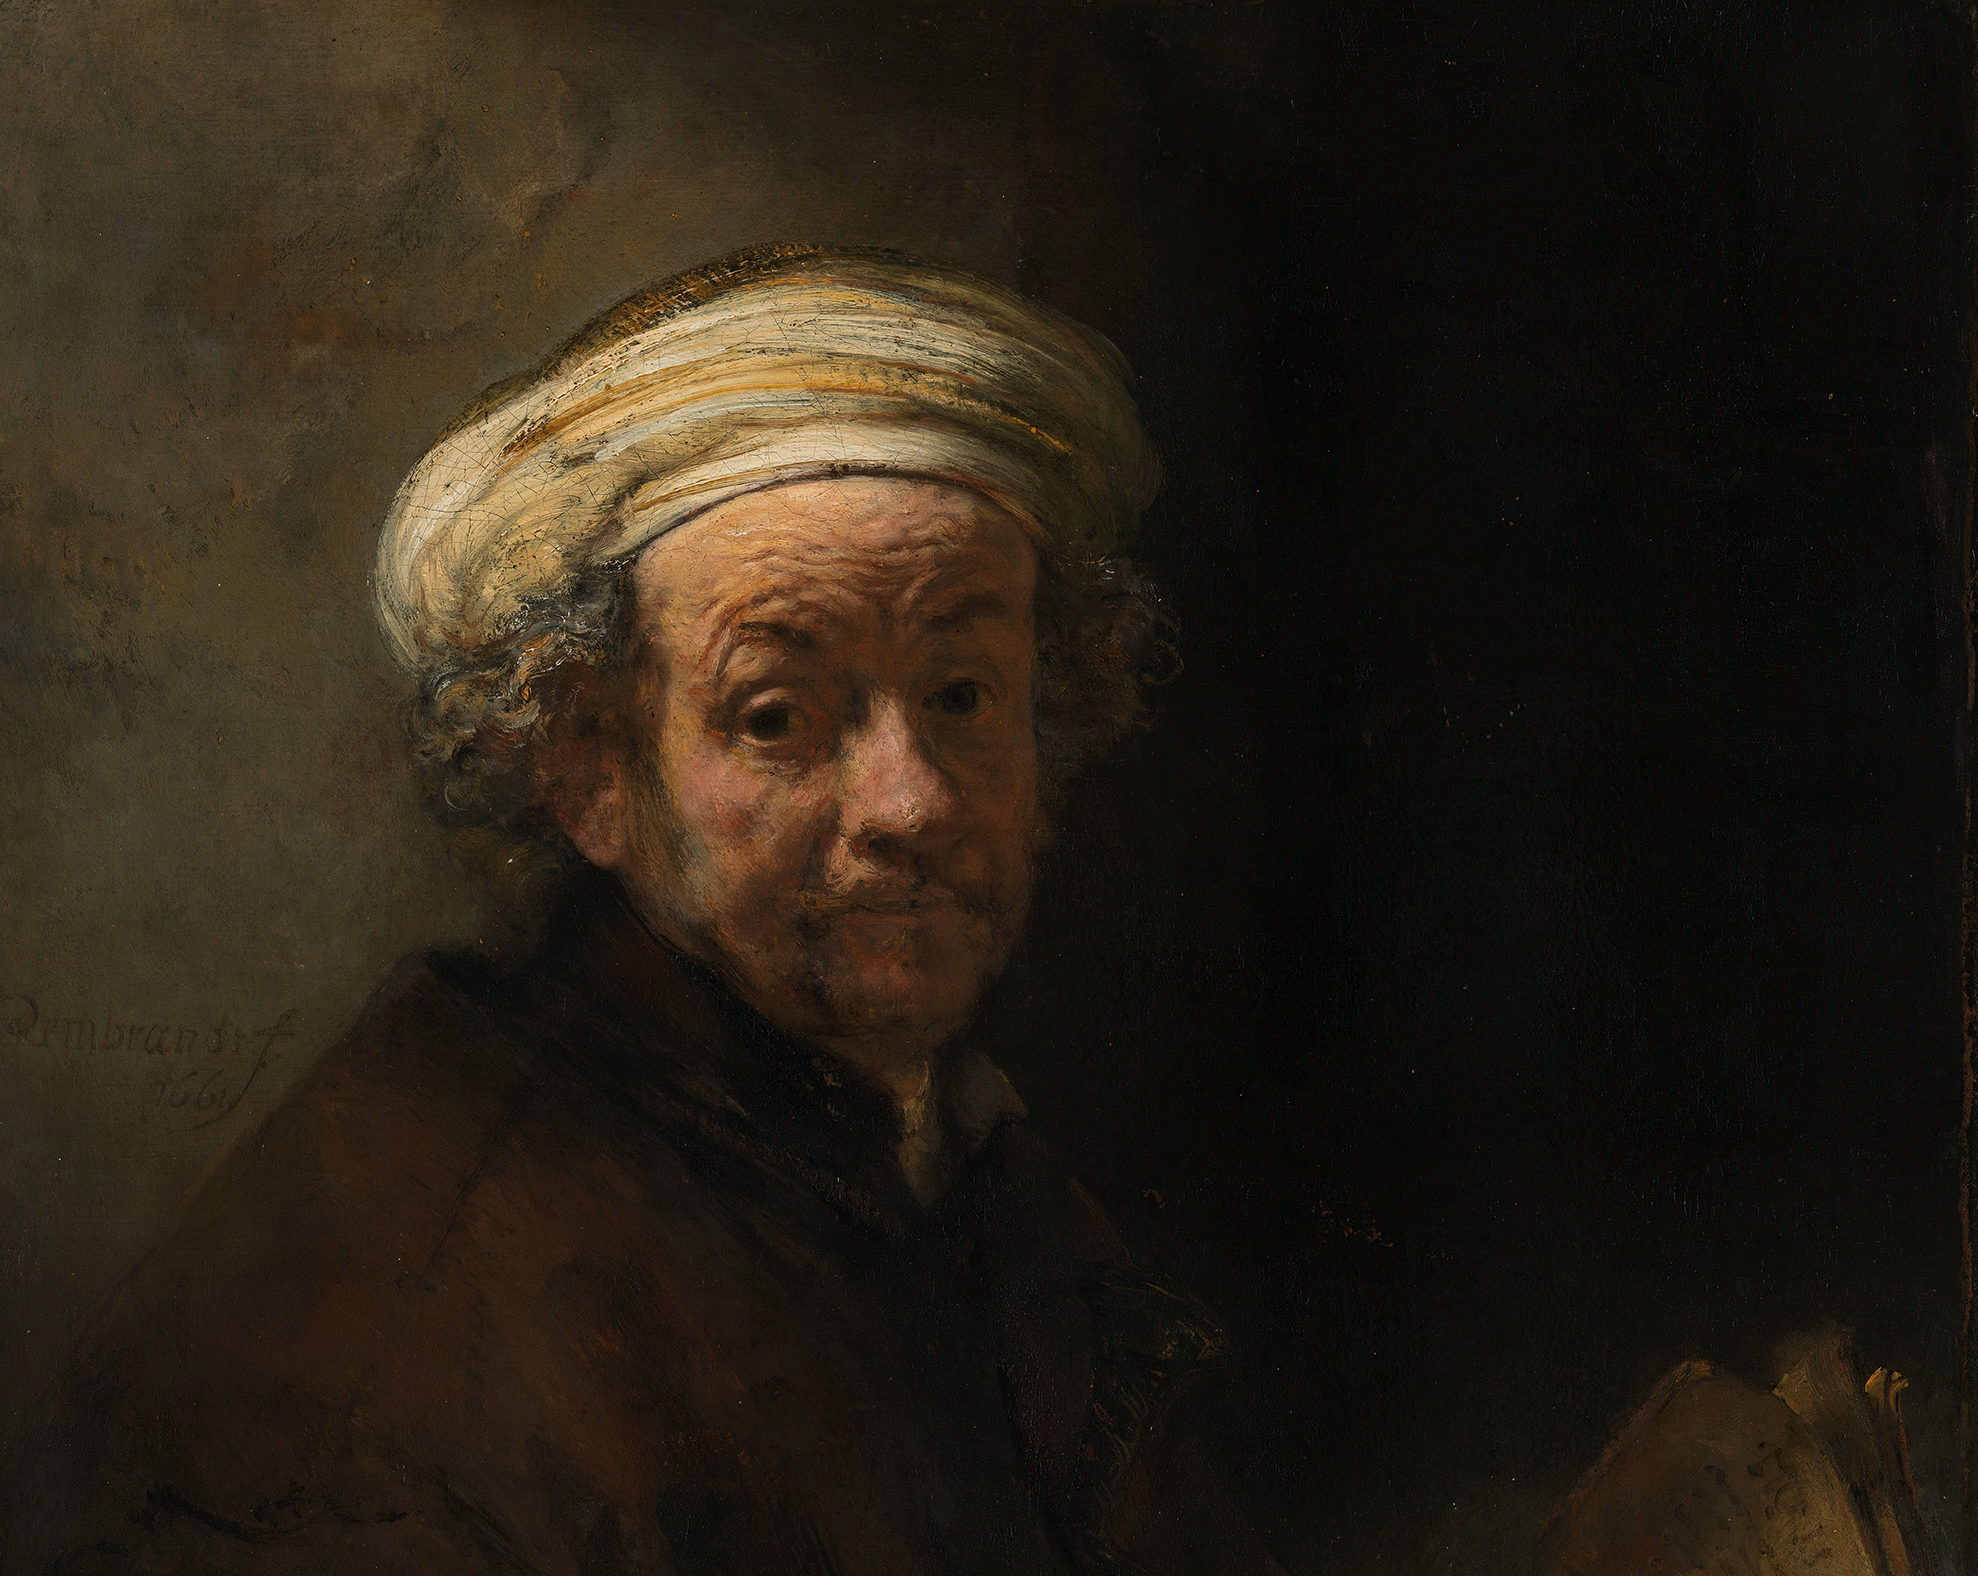 L’autoritratto come San Paolo: Rembrandt in mostra a Roma